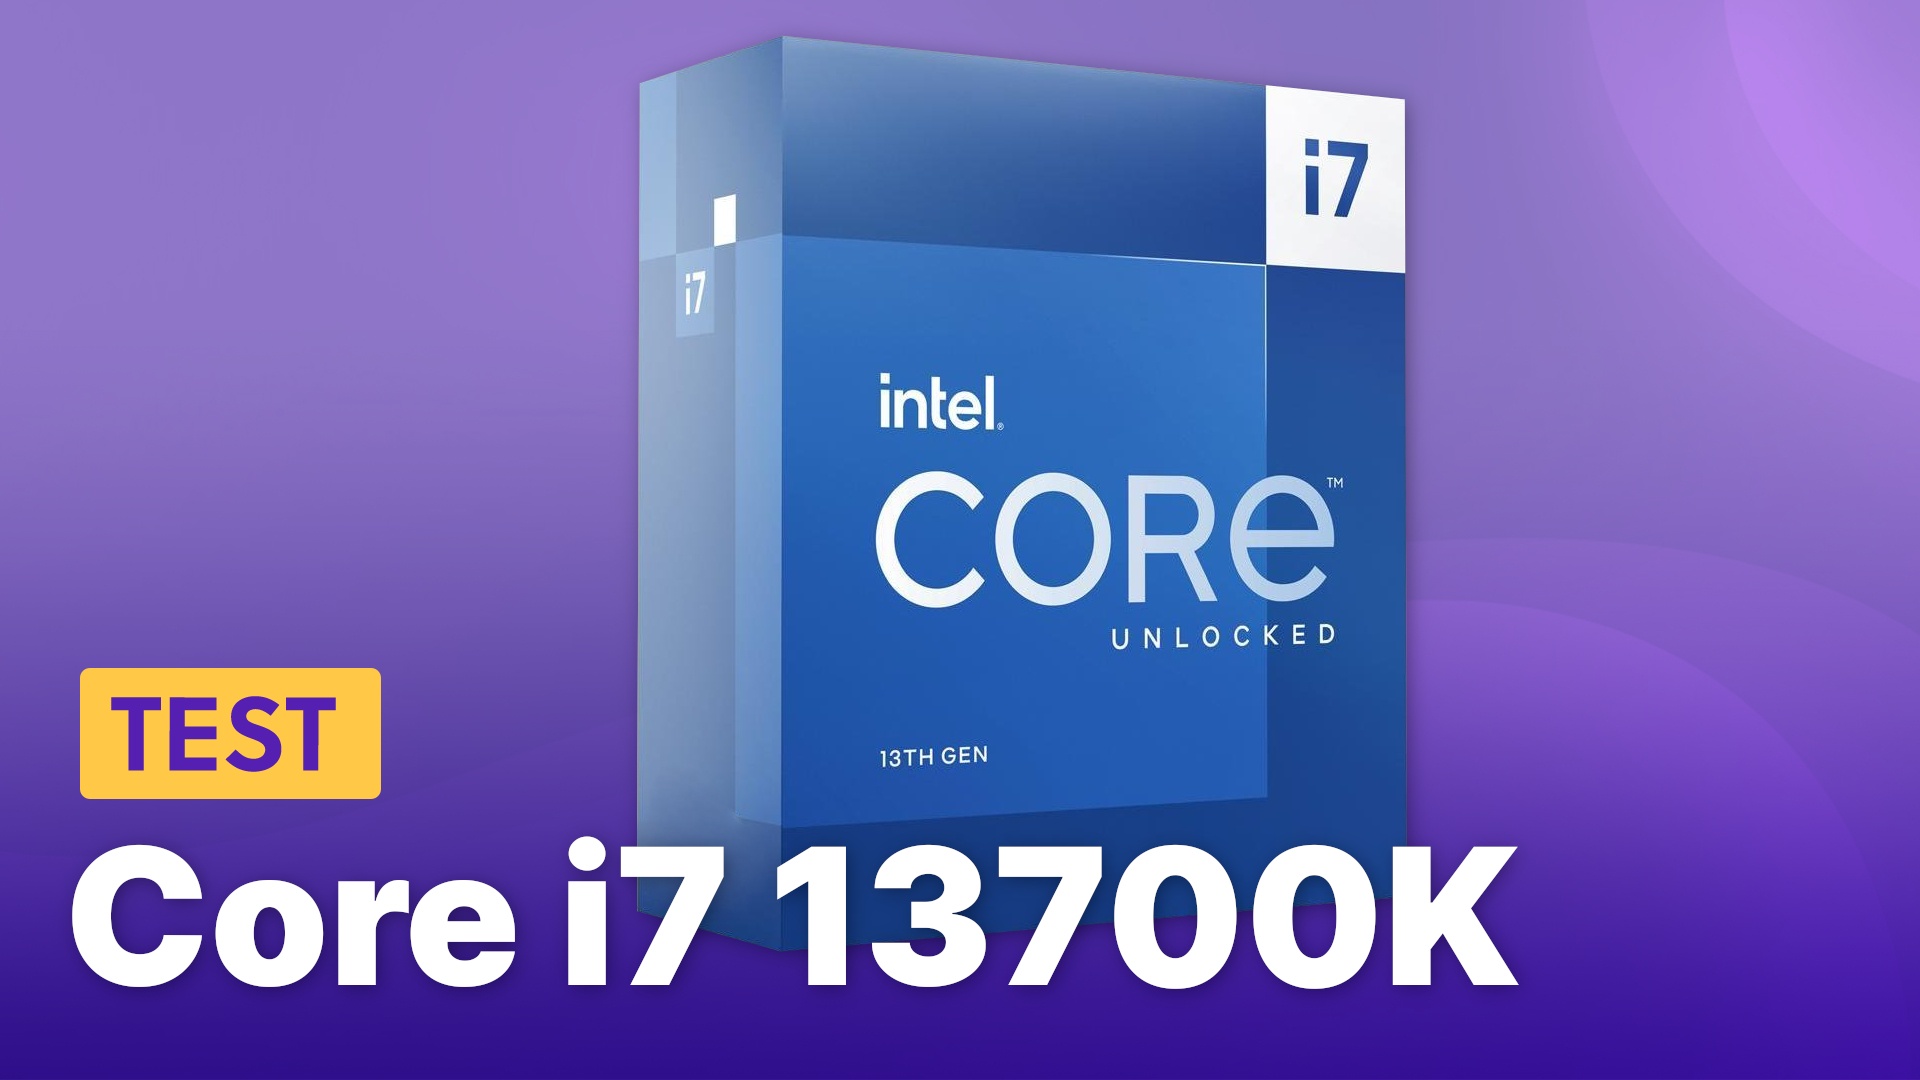 Eine der beliebtesten Gaming-CPUs im Test: Wie gut ist Intels Core